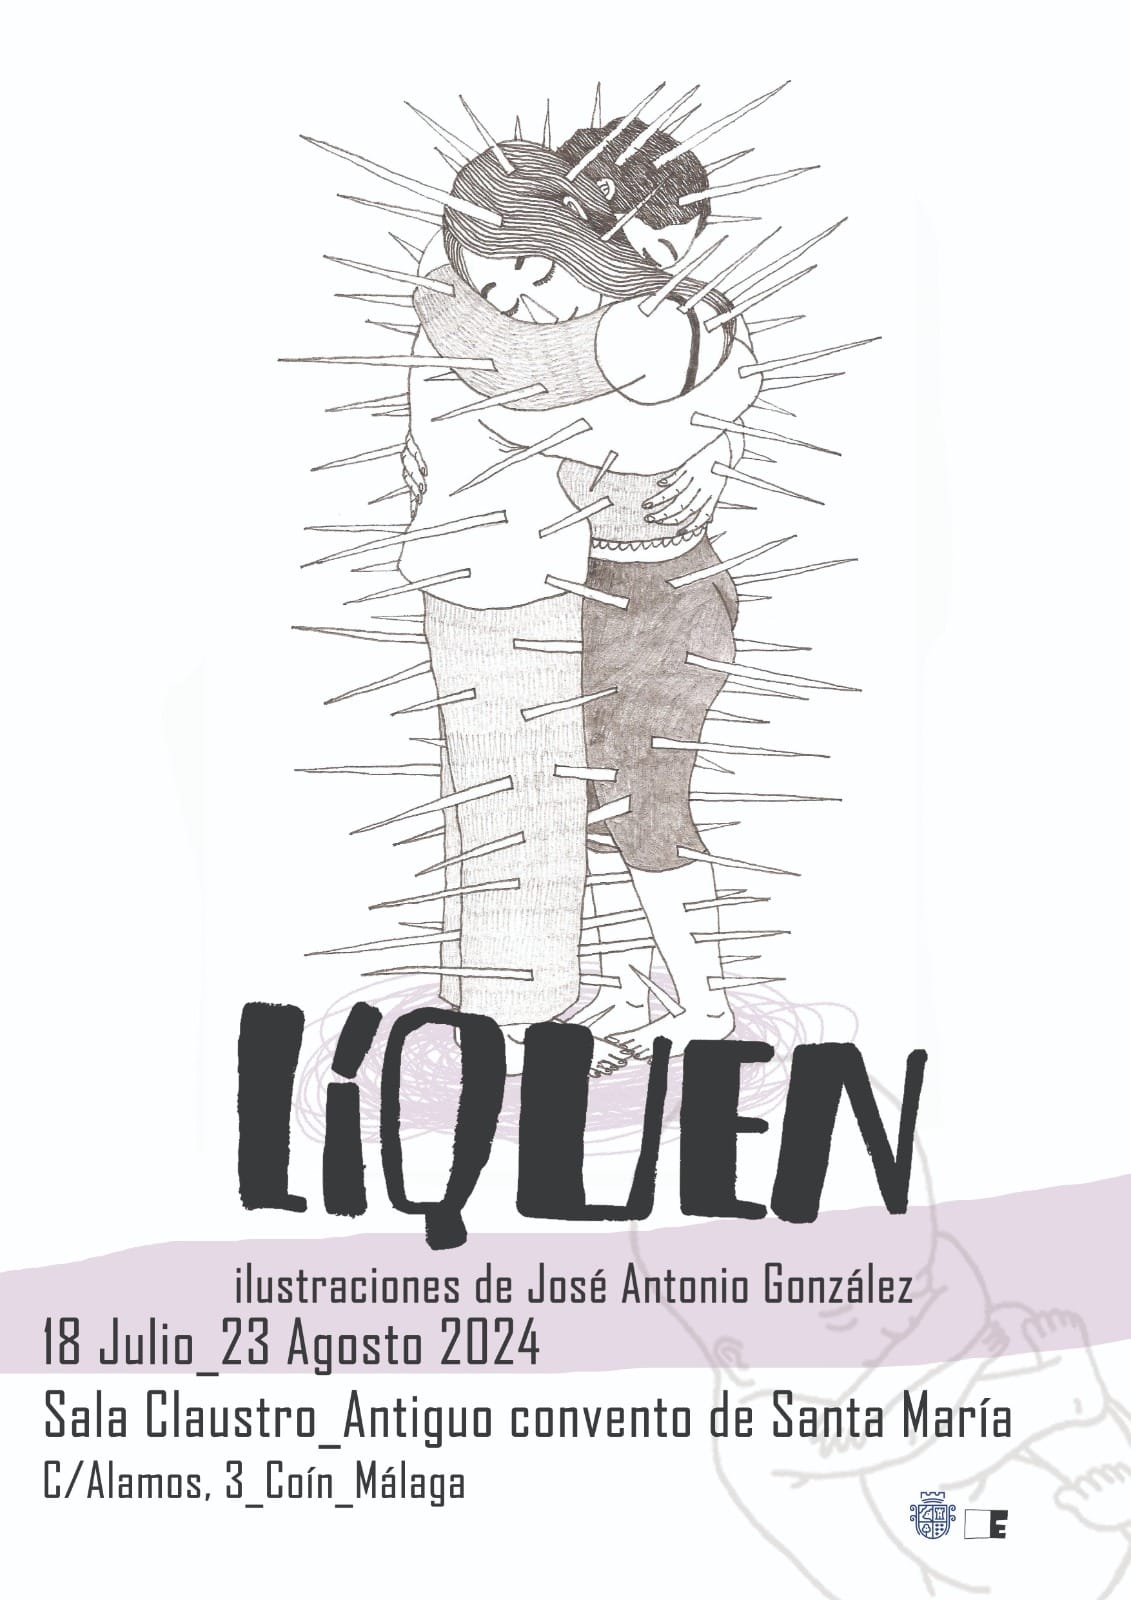 EXPOSICIÓN "LIQUEN" DE JOSE ANTONIO GONZÁLEZ